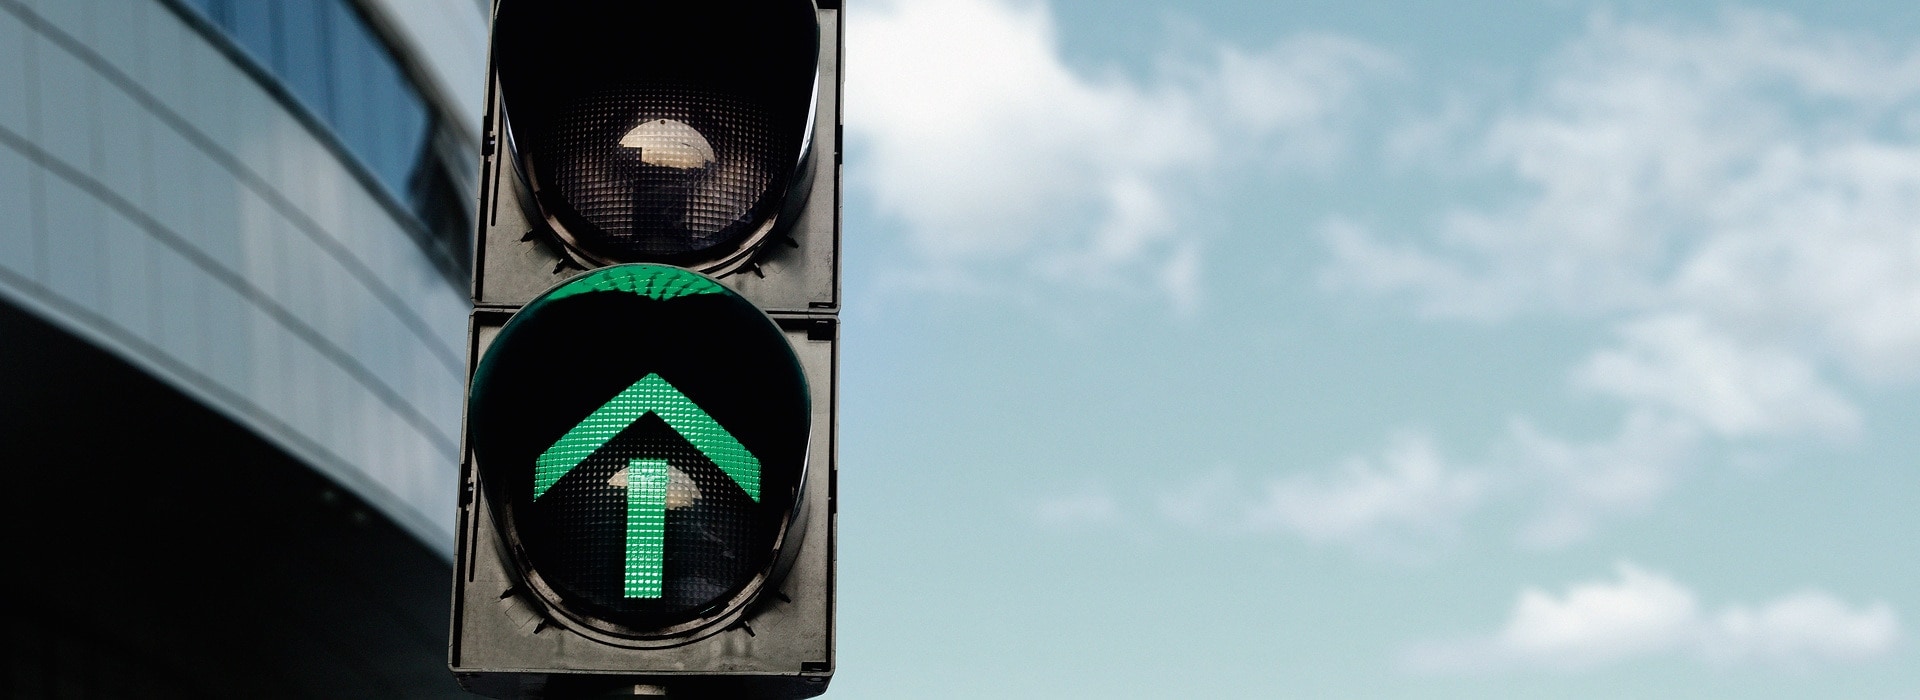 Traffic light - green arrow